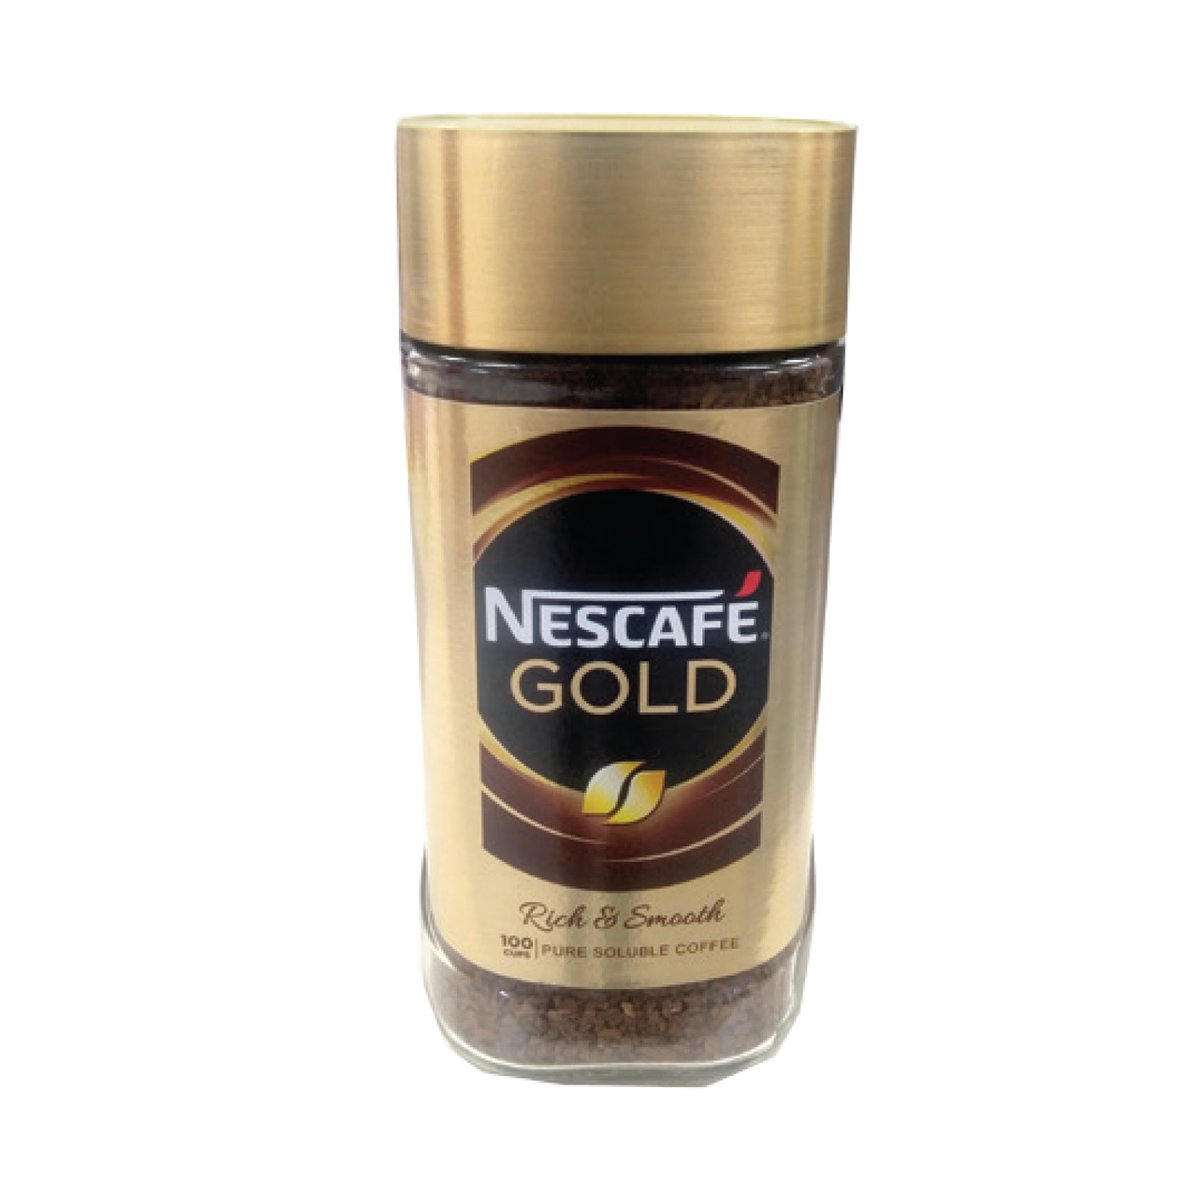 Nescafe Gold Jar 200g